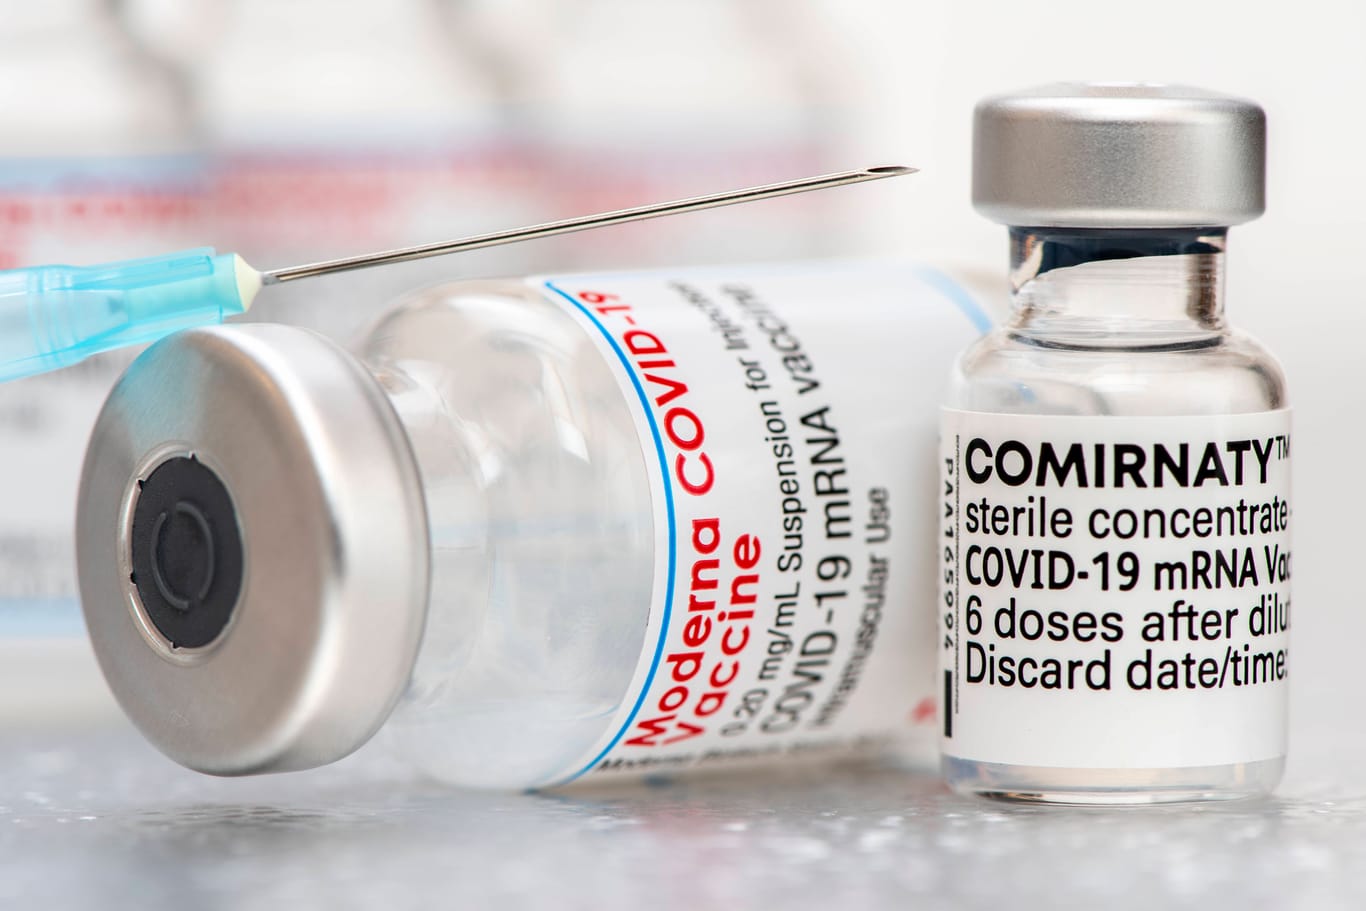 Angepasster Impfstoff Comirnaty: Das Präparat kommt vom Hersteller Biontech.